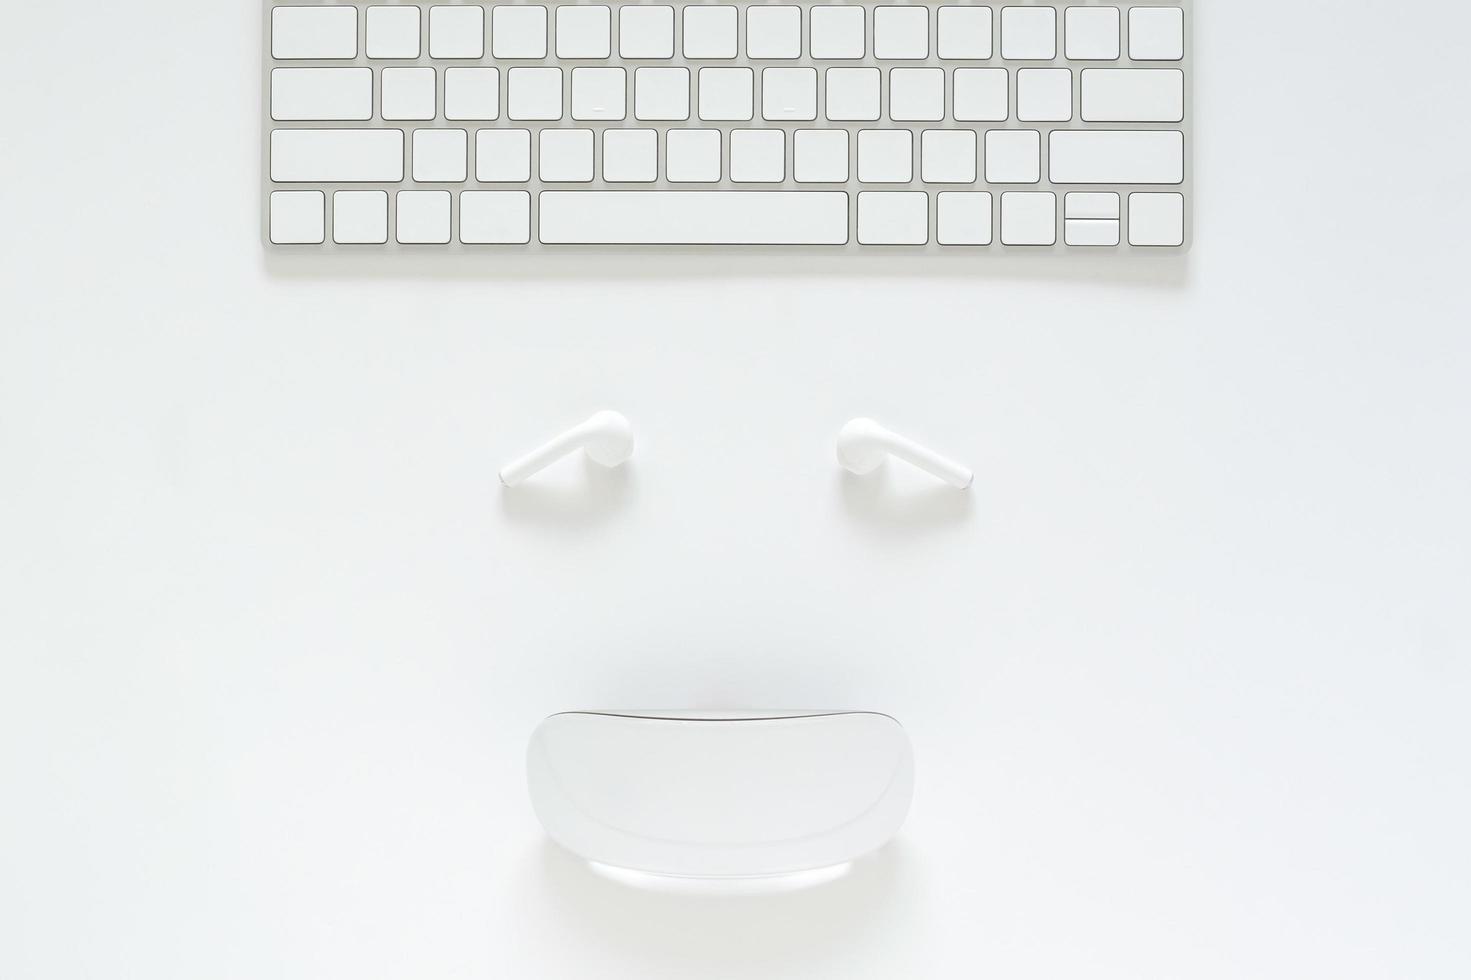 flache lage von tastatur, kopfhörer und maus als lächelndes gesicht auf weißem hintergrund für cyber montag online-verkaufskonzept. foto